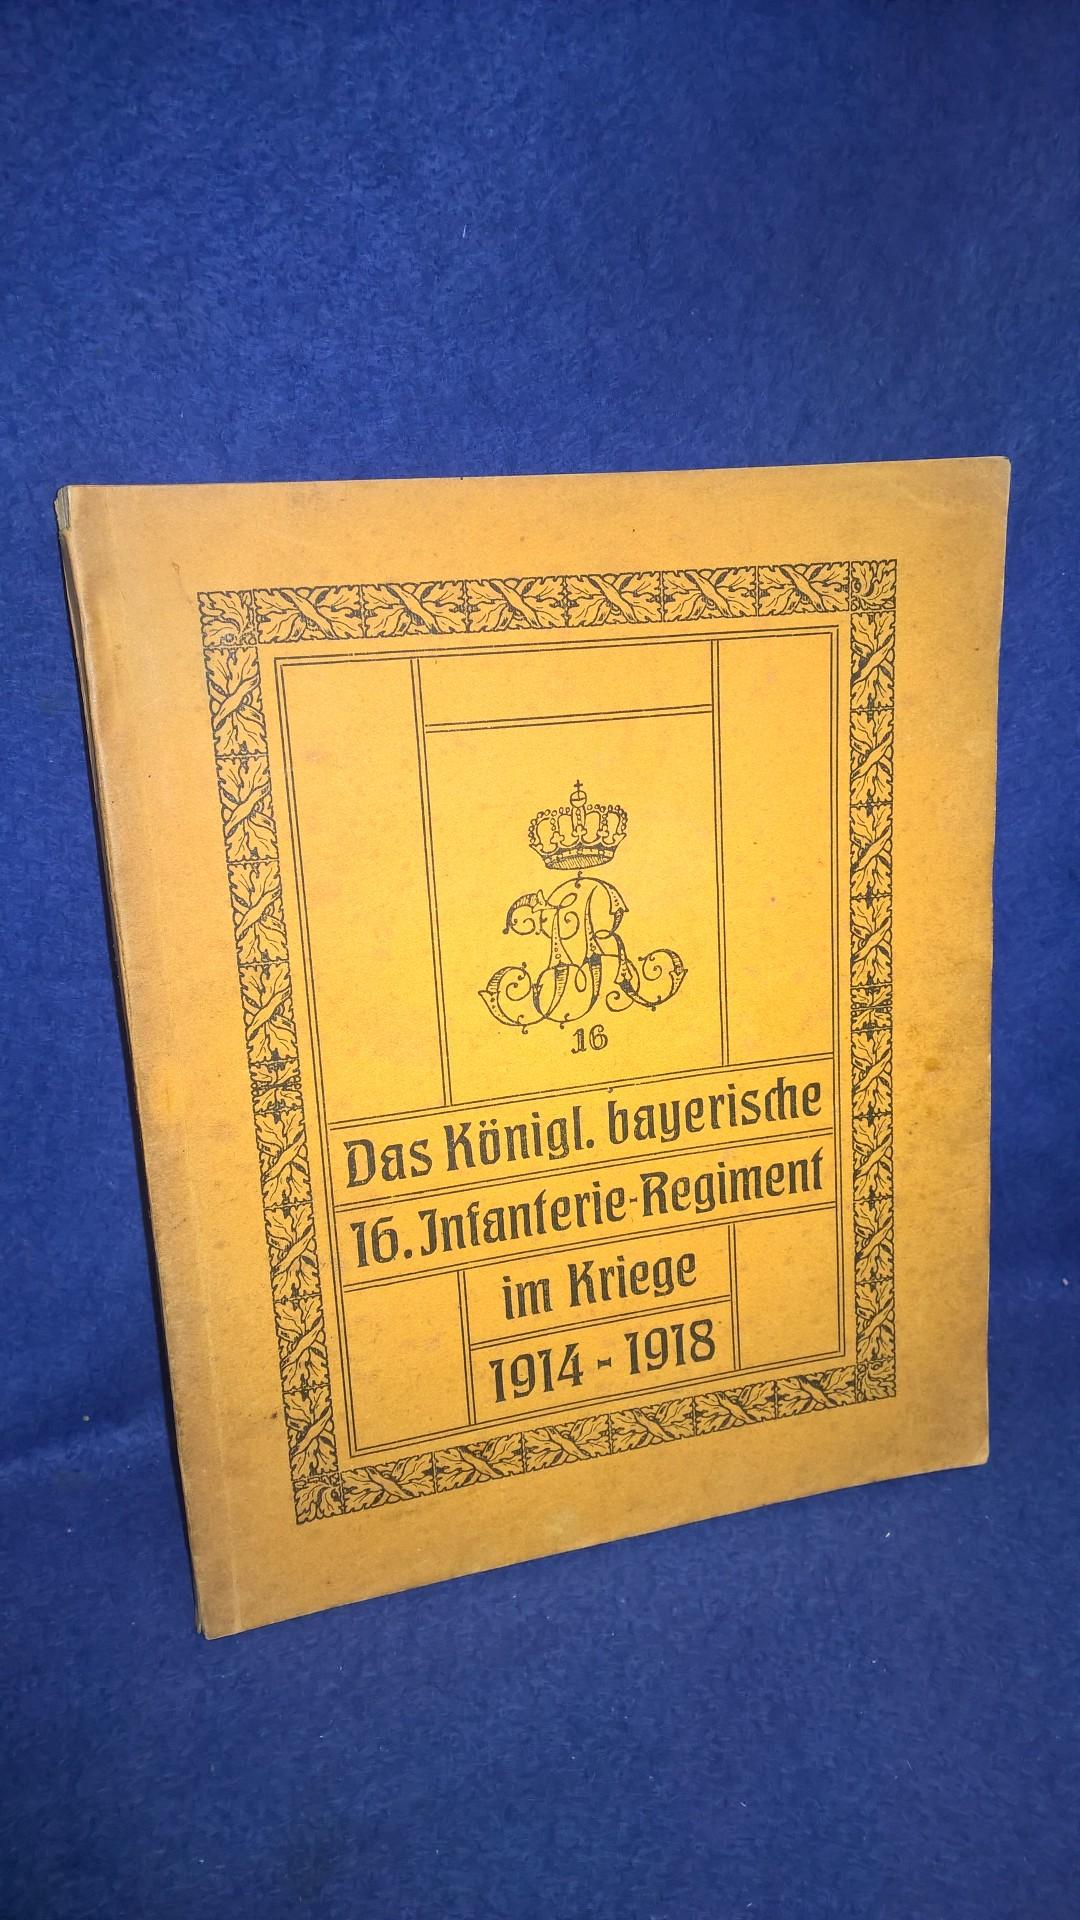 Das Königlich bayerische 16. Infanterie-Regiment im Kriege 1914 - 1918.